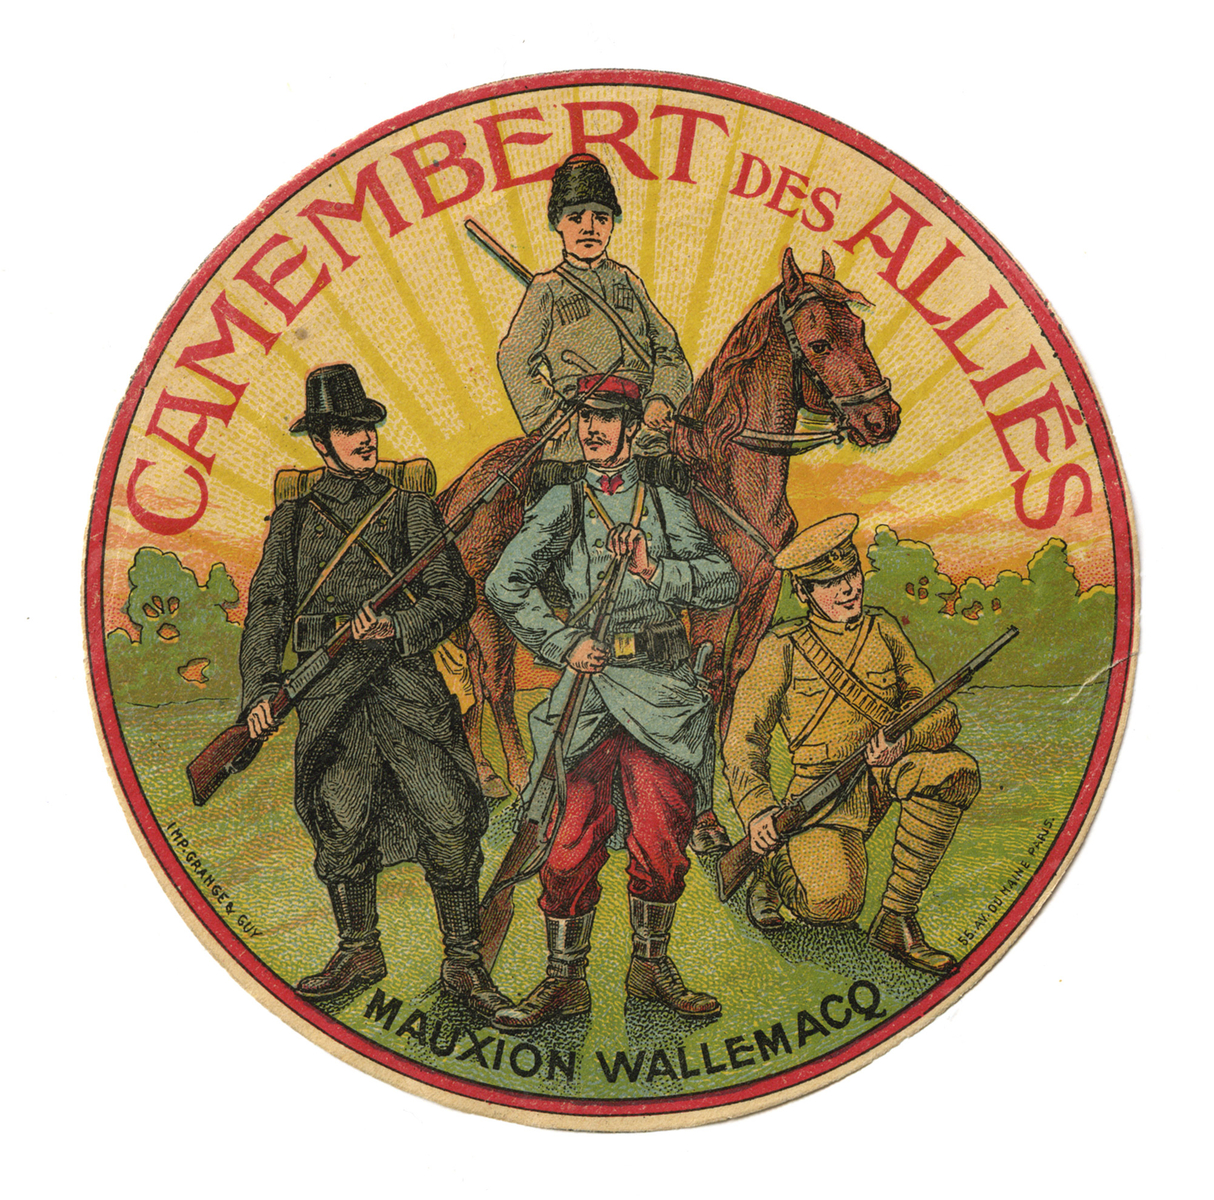 Étiquette de camembert des alliés datant de la Grande Guerre - PAIR